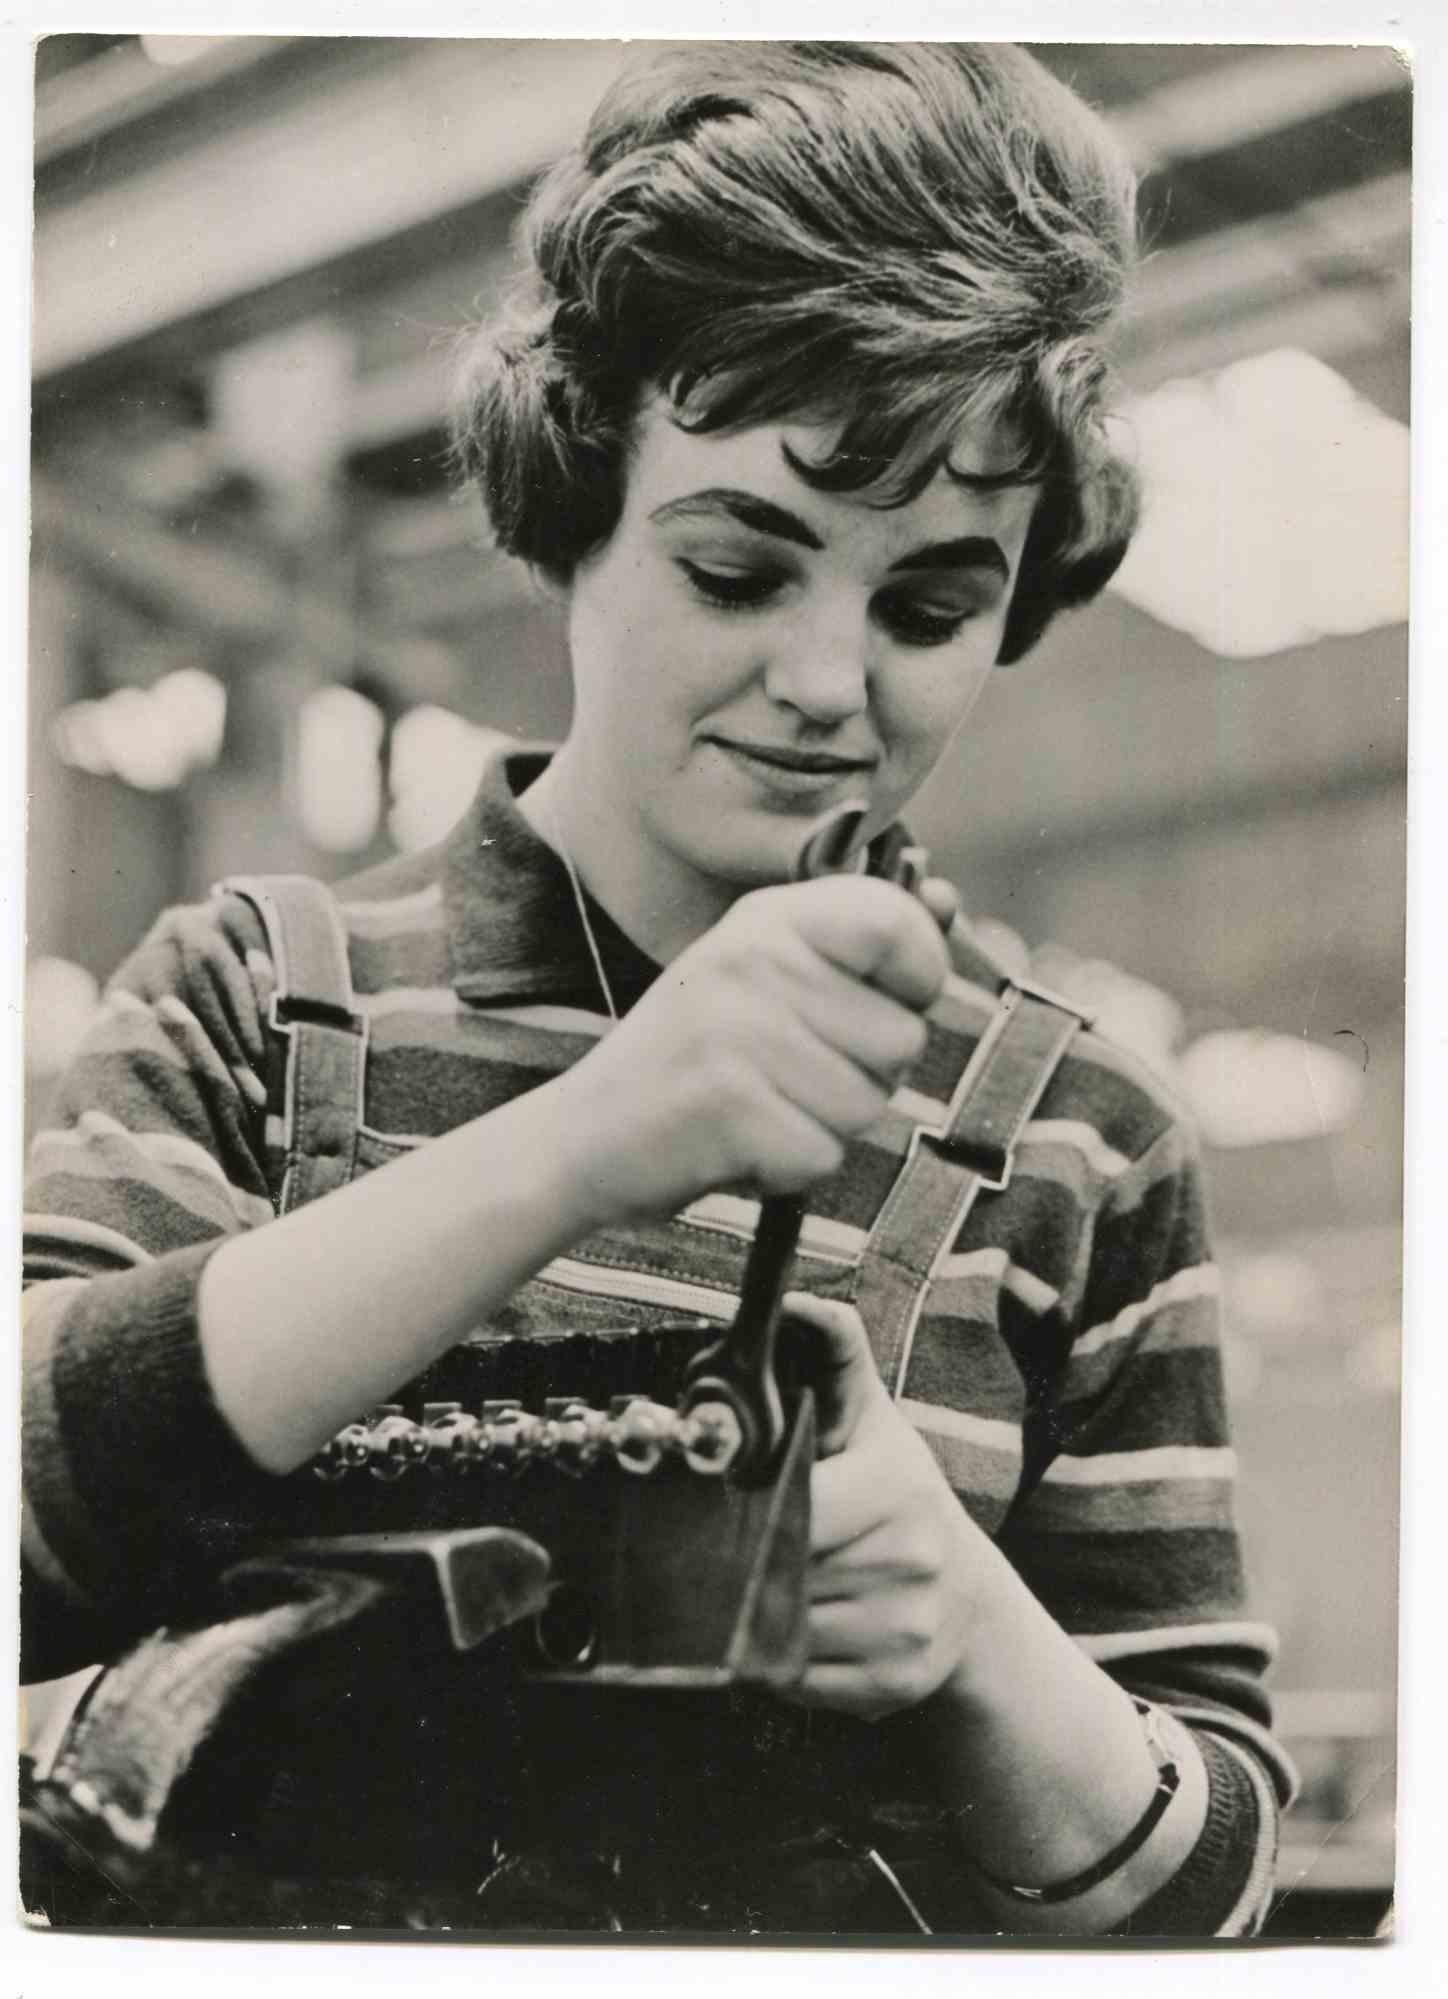 Women at Work – Historische Fotografie über Frauenrechte – 1960er Jahre